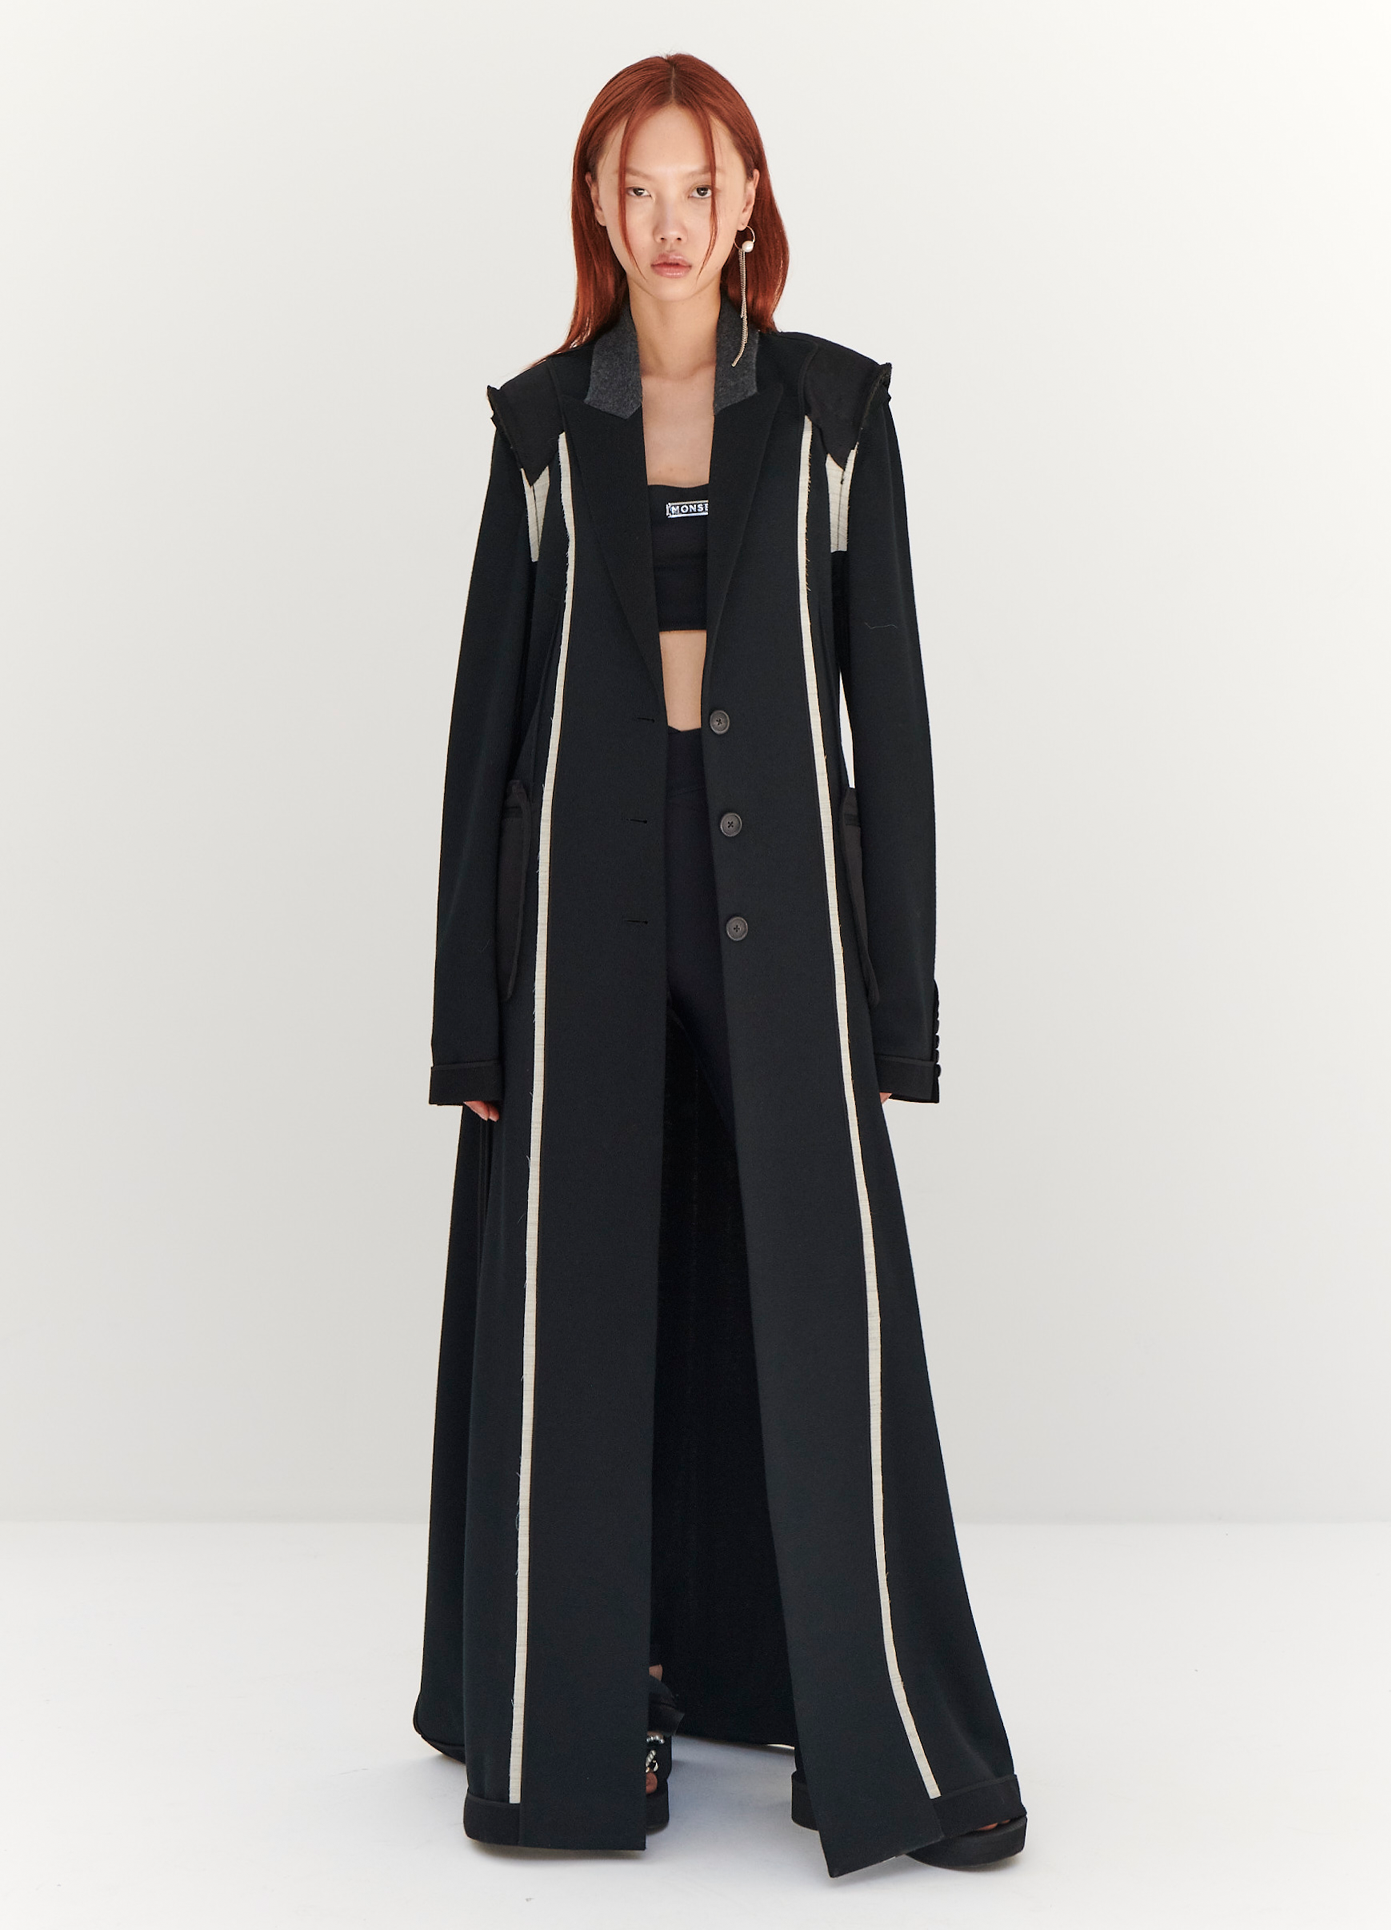 MONSE Floor Length Reversed Coat in Black on model full front view